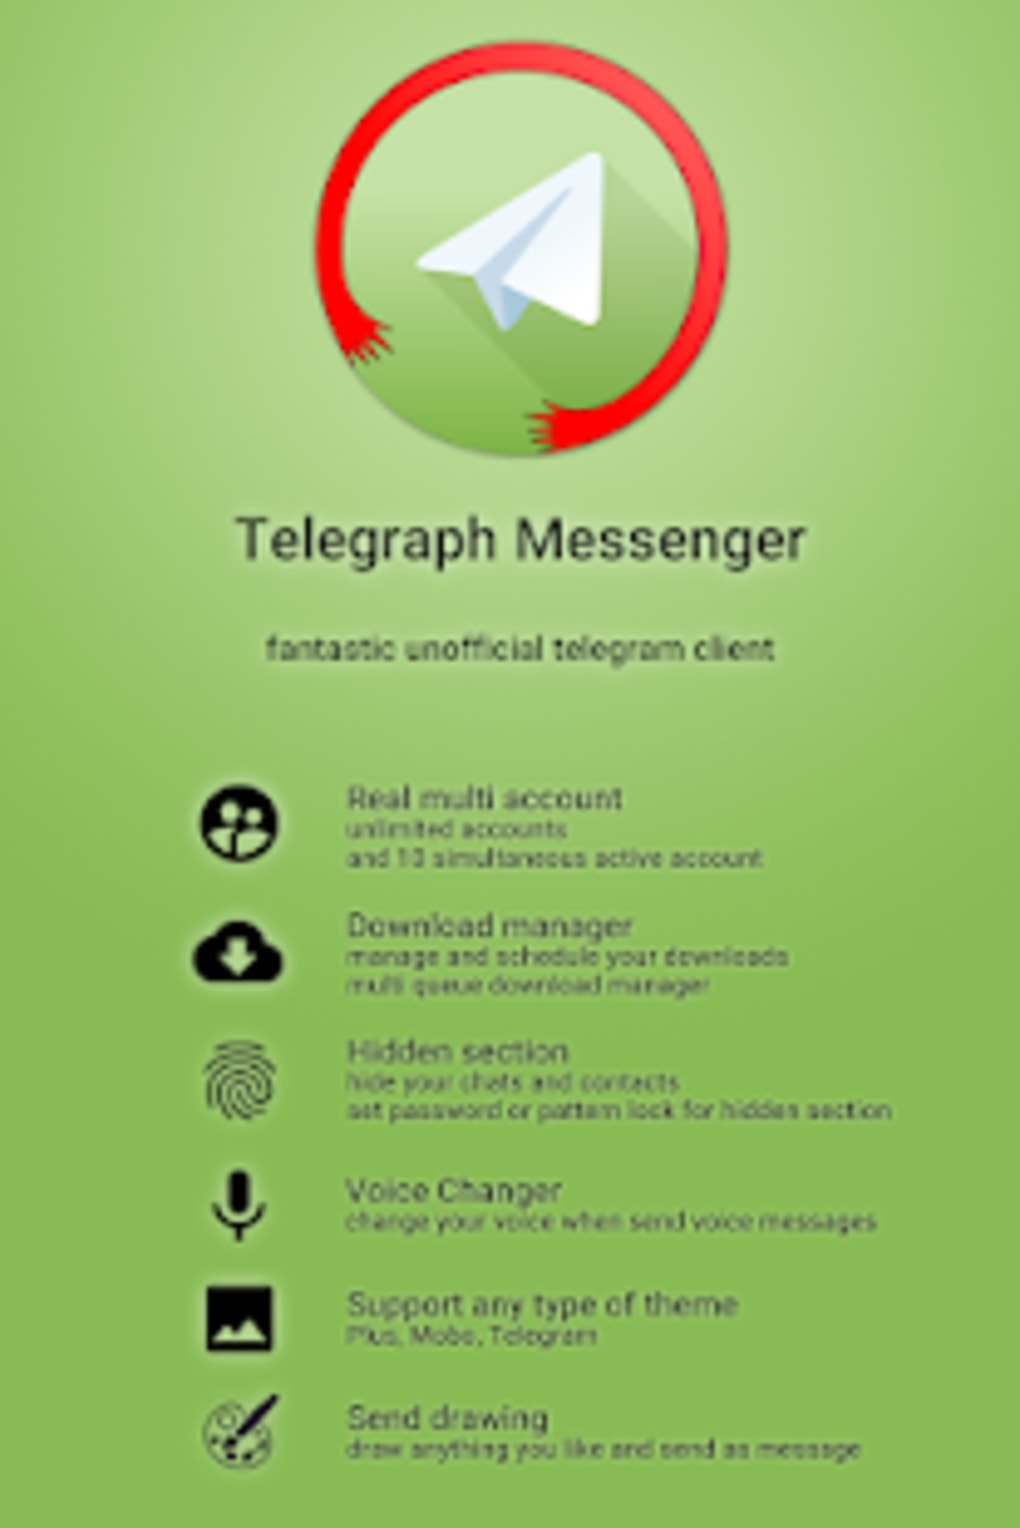 Скачать телеграмм бесплатно на русском языке на телефон андроид с официального сайта фото 105